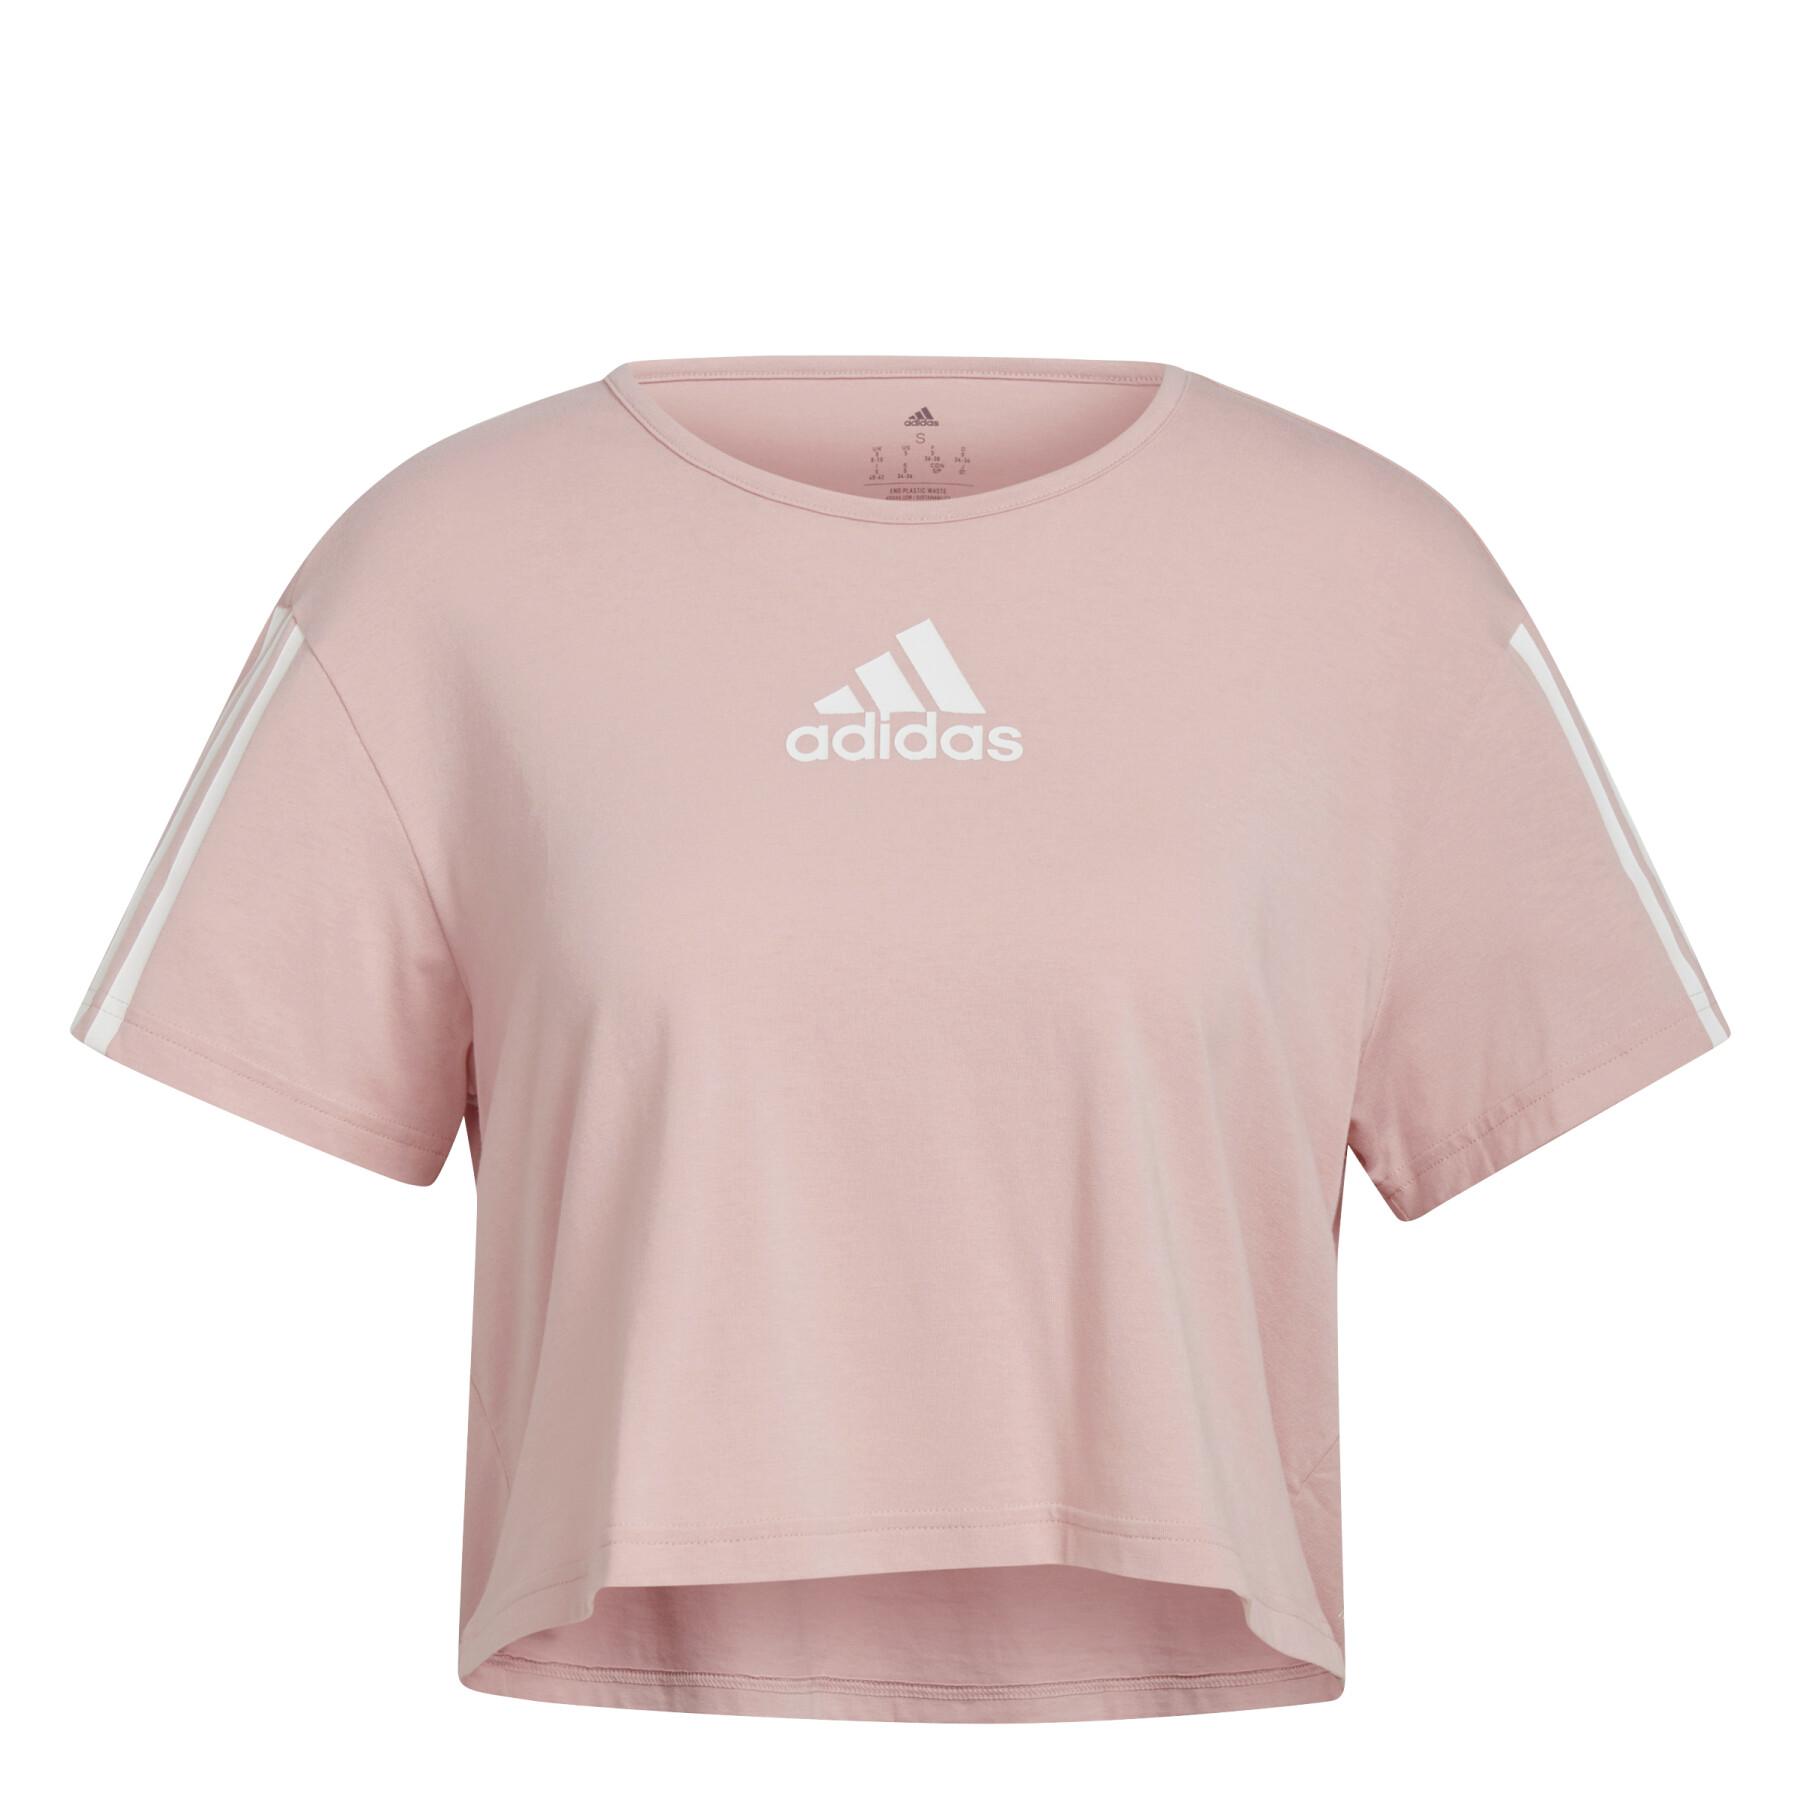 Women's crop top T-shirt adidas